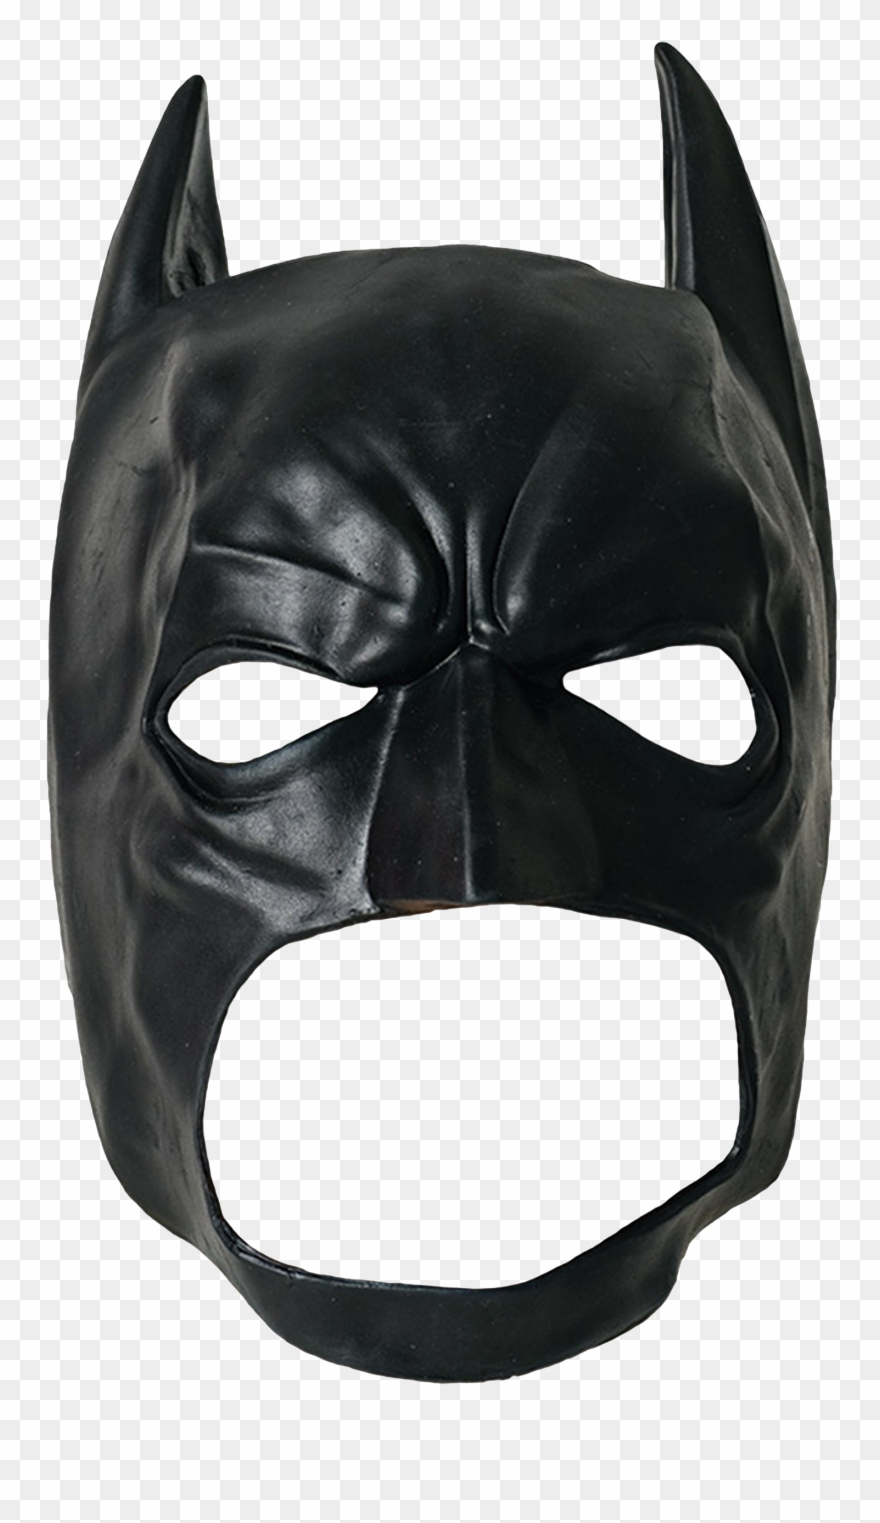 Batman Mask Png Transparent Images - Batman Costume Mask concernant Masque De Catwoman A Imprimer